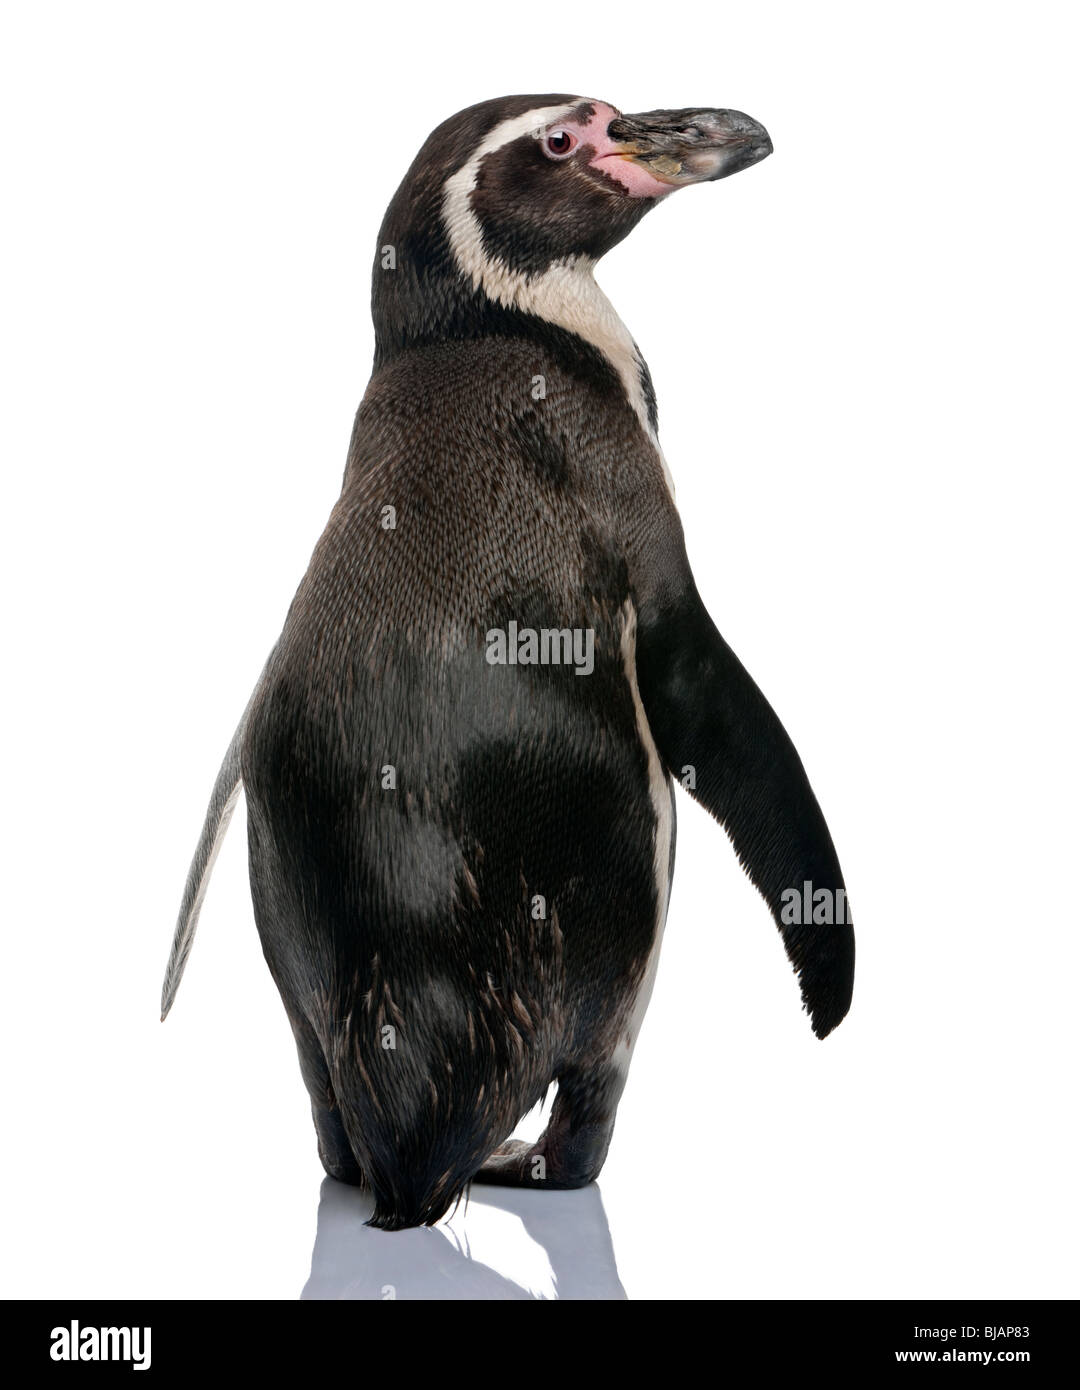 Pinguini Humboldt, Spheniscus Humboldti, in piedi di fronte a uno sfondo bianco Foto Stock